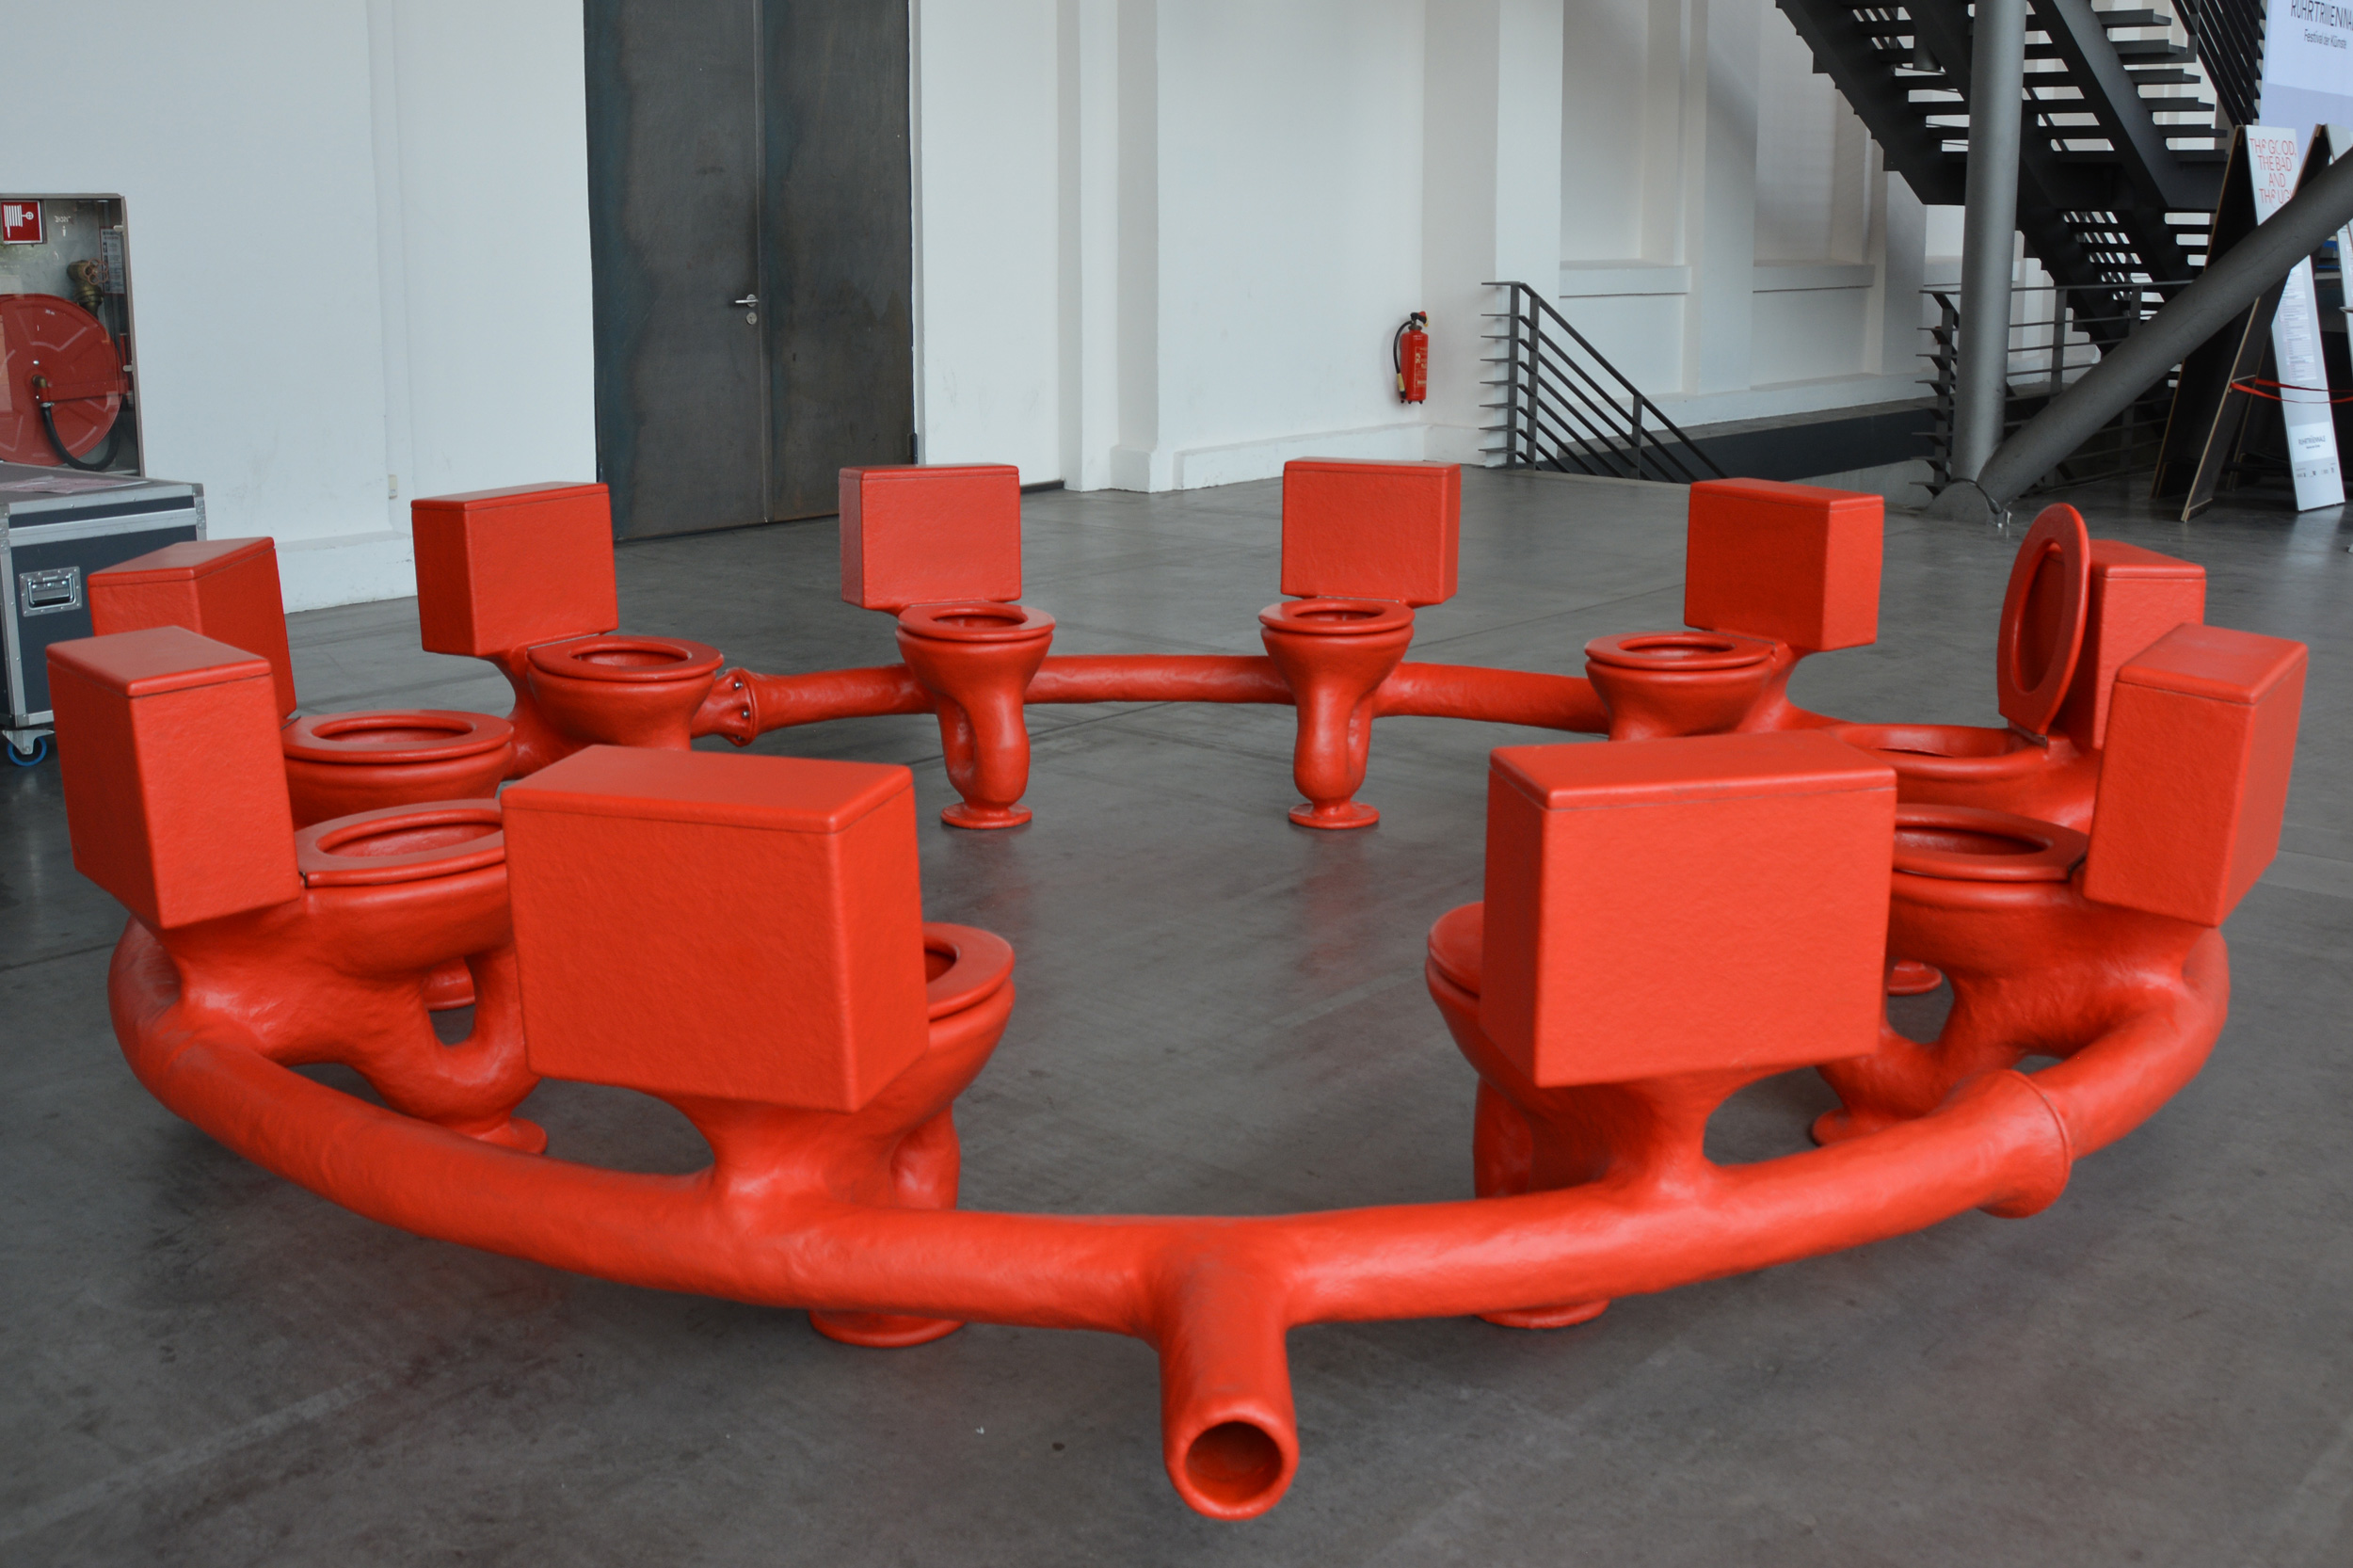 Roter Toilettenkreis "Excrementorium" von Atelier van Lieshout bei der Ruhrtriennale; Foto: Vera Lisakowski